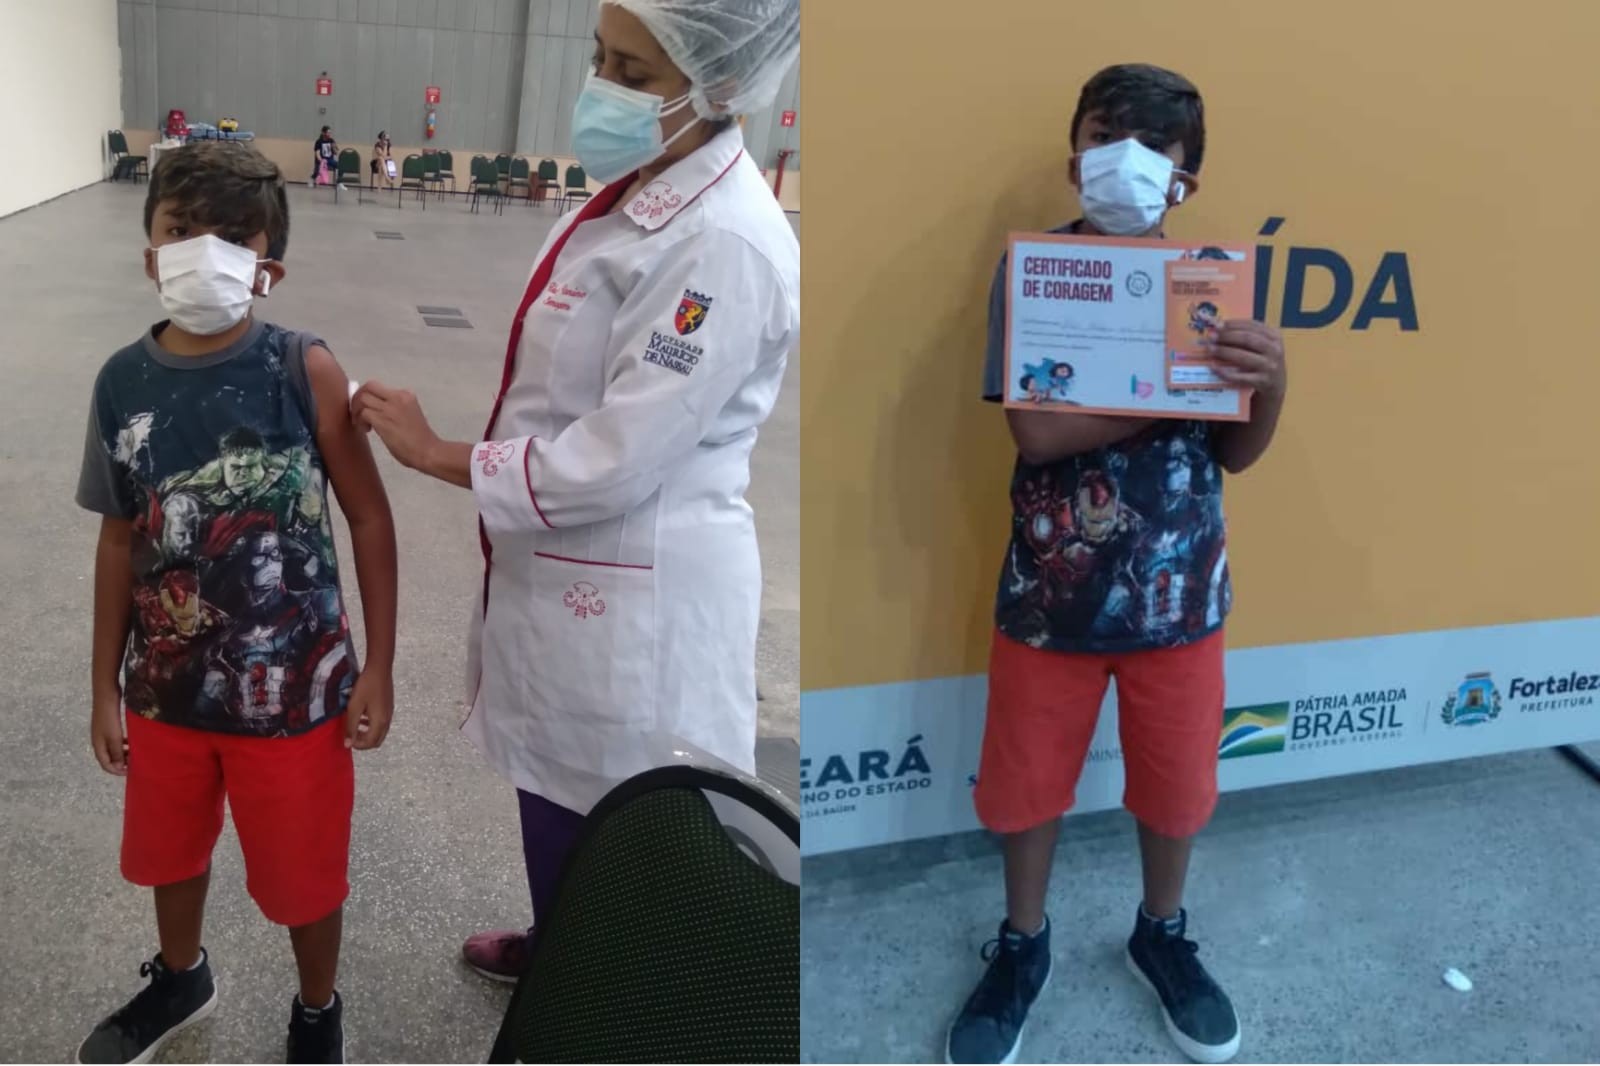 Vídeo: menino de 10 anos dança funk antes de tomar vacina contra Covid em Fortaleza; 'perdi o medo', diz